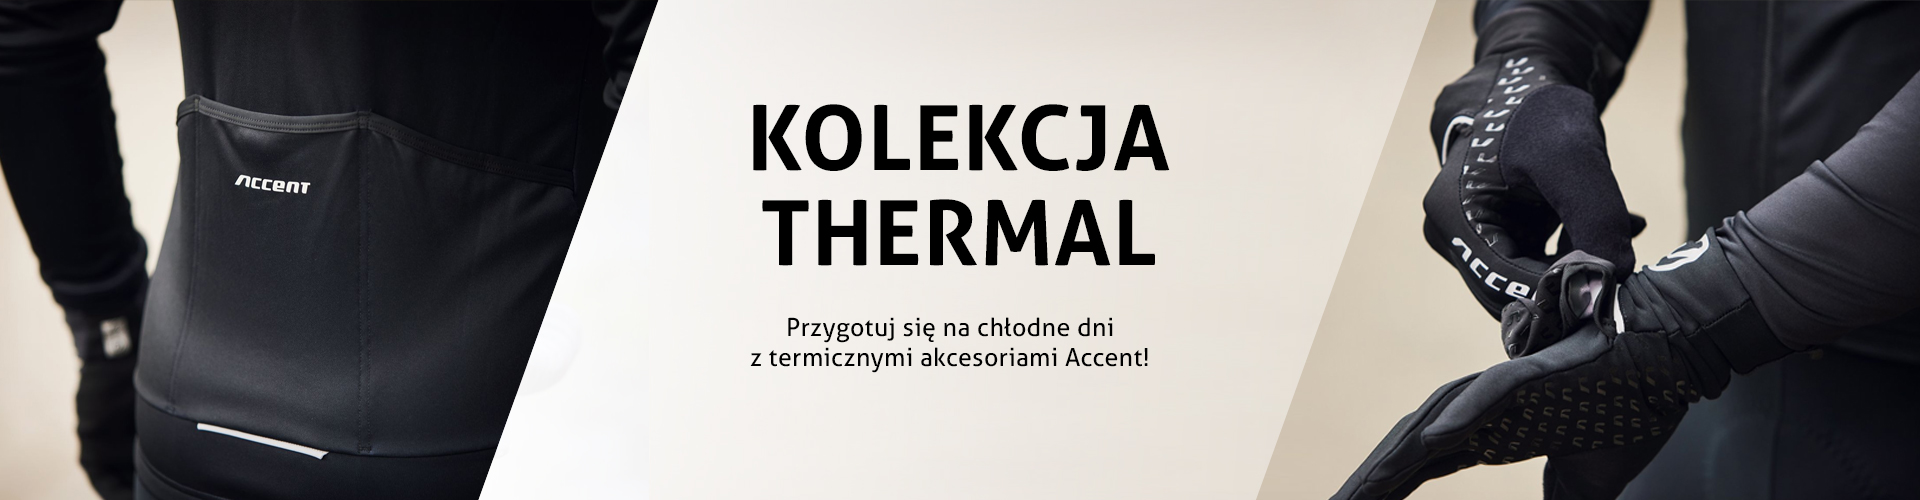 Accent Bikes kolekcja odzieży termicznej Thermal